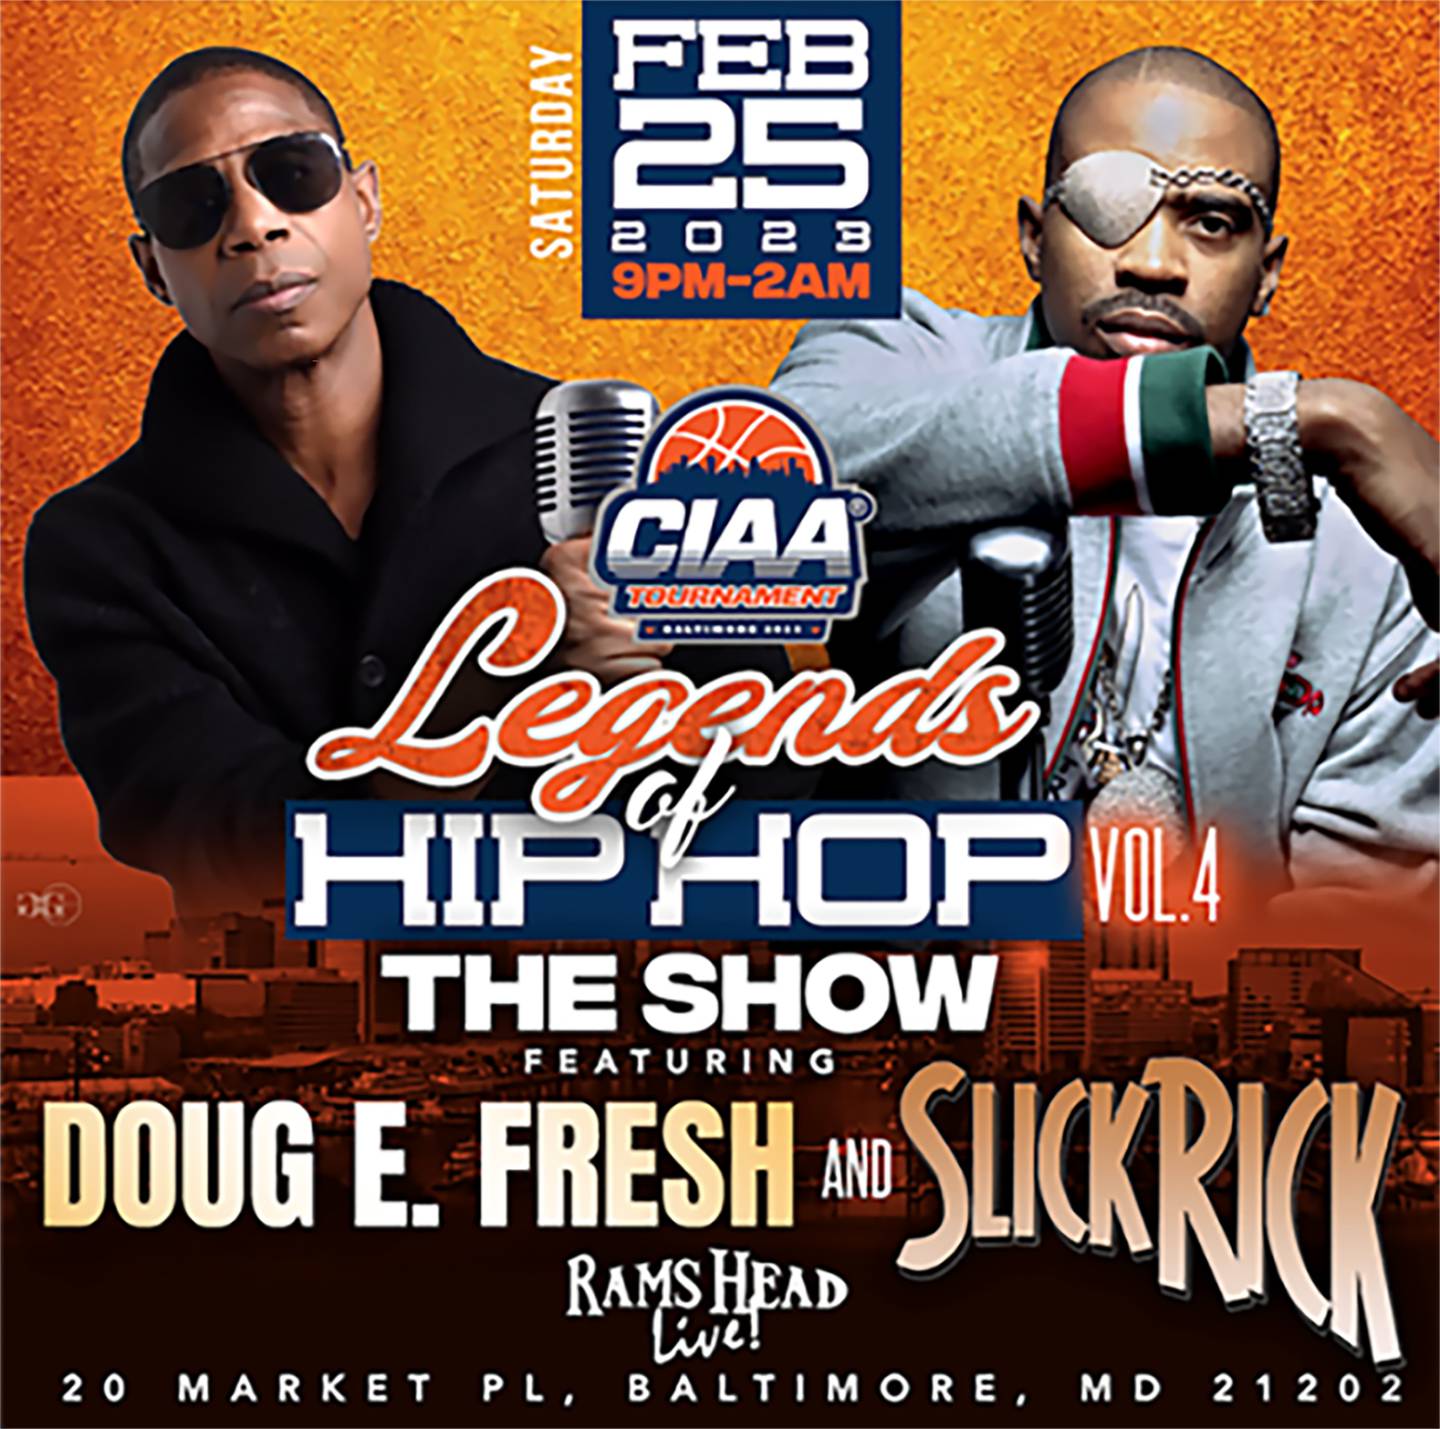 Doug E. Fresh and Slick Rick perform at the Legends of Hip Hop vol 4 show at the CIAA.